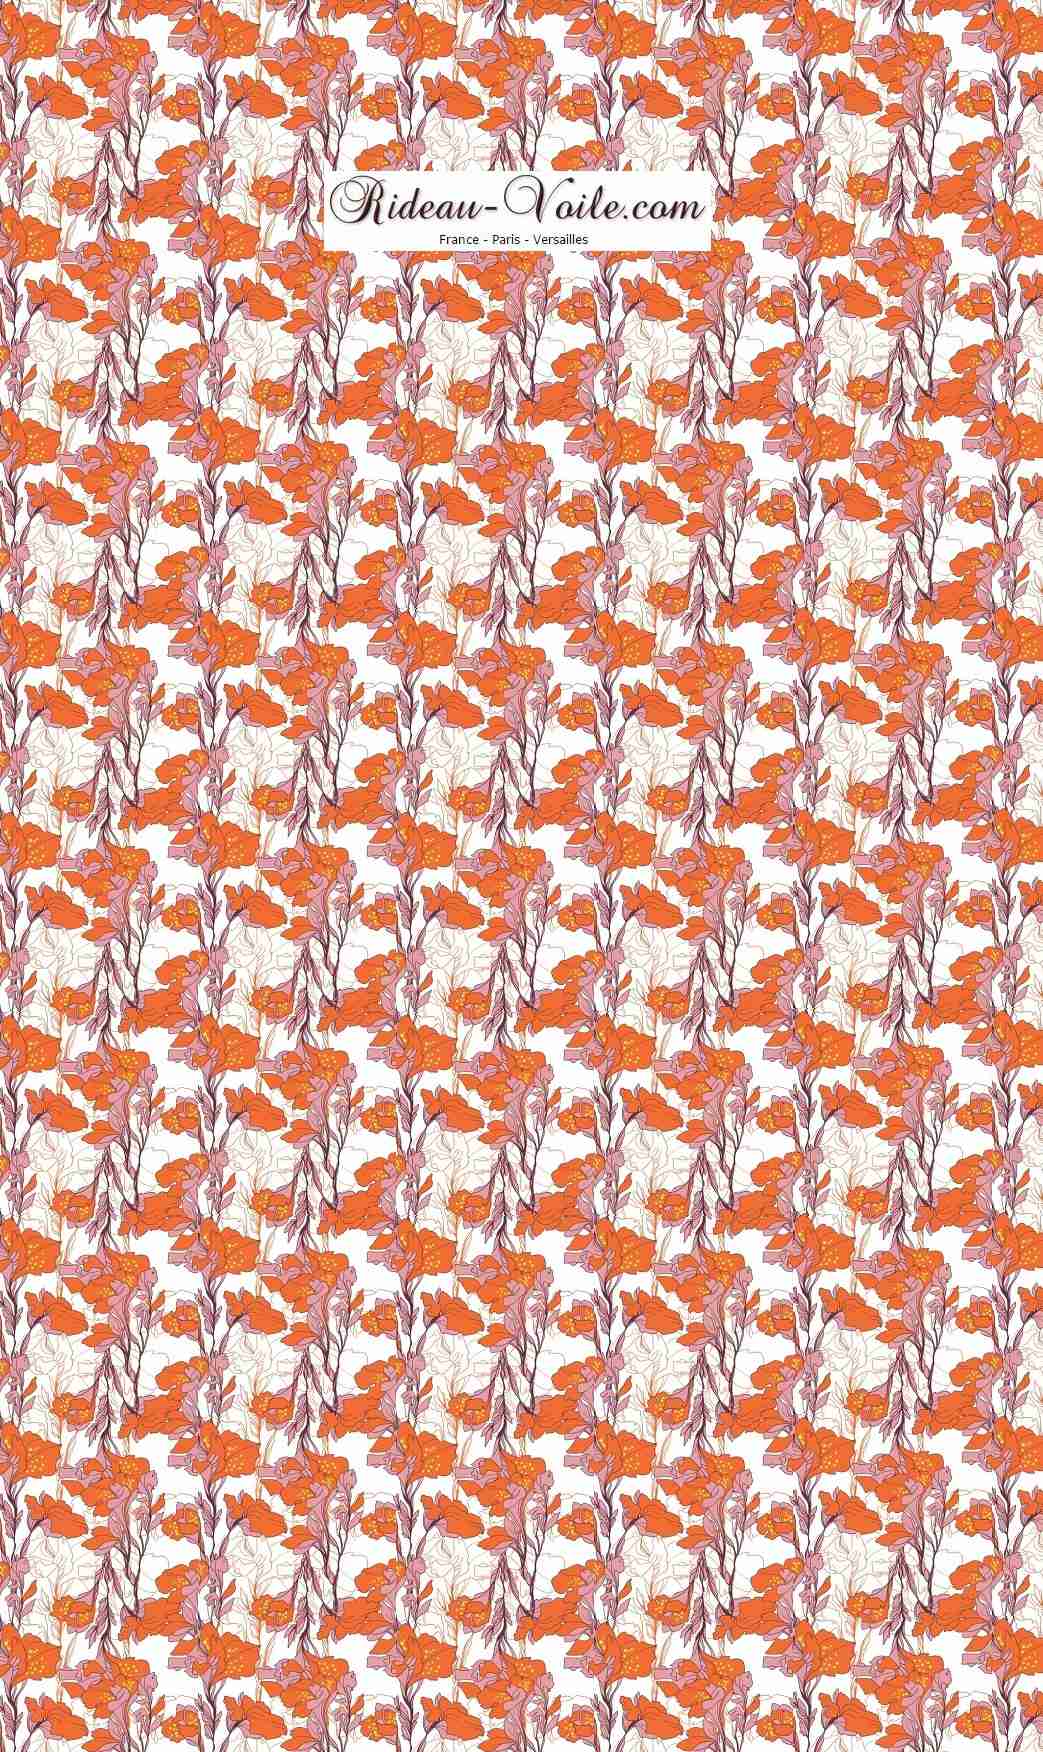 orange blanc tissu tissus fleur fleurs fleuri floral imprimé motif ameublement haut de gamme au mètre grosse feuille plante décoration rideau coussin couette abat jour fauteuil d'appoint salon cuisine salle d'attente sur mesure  occultant ignifuge